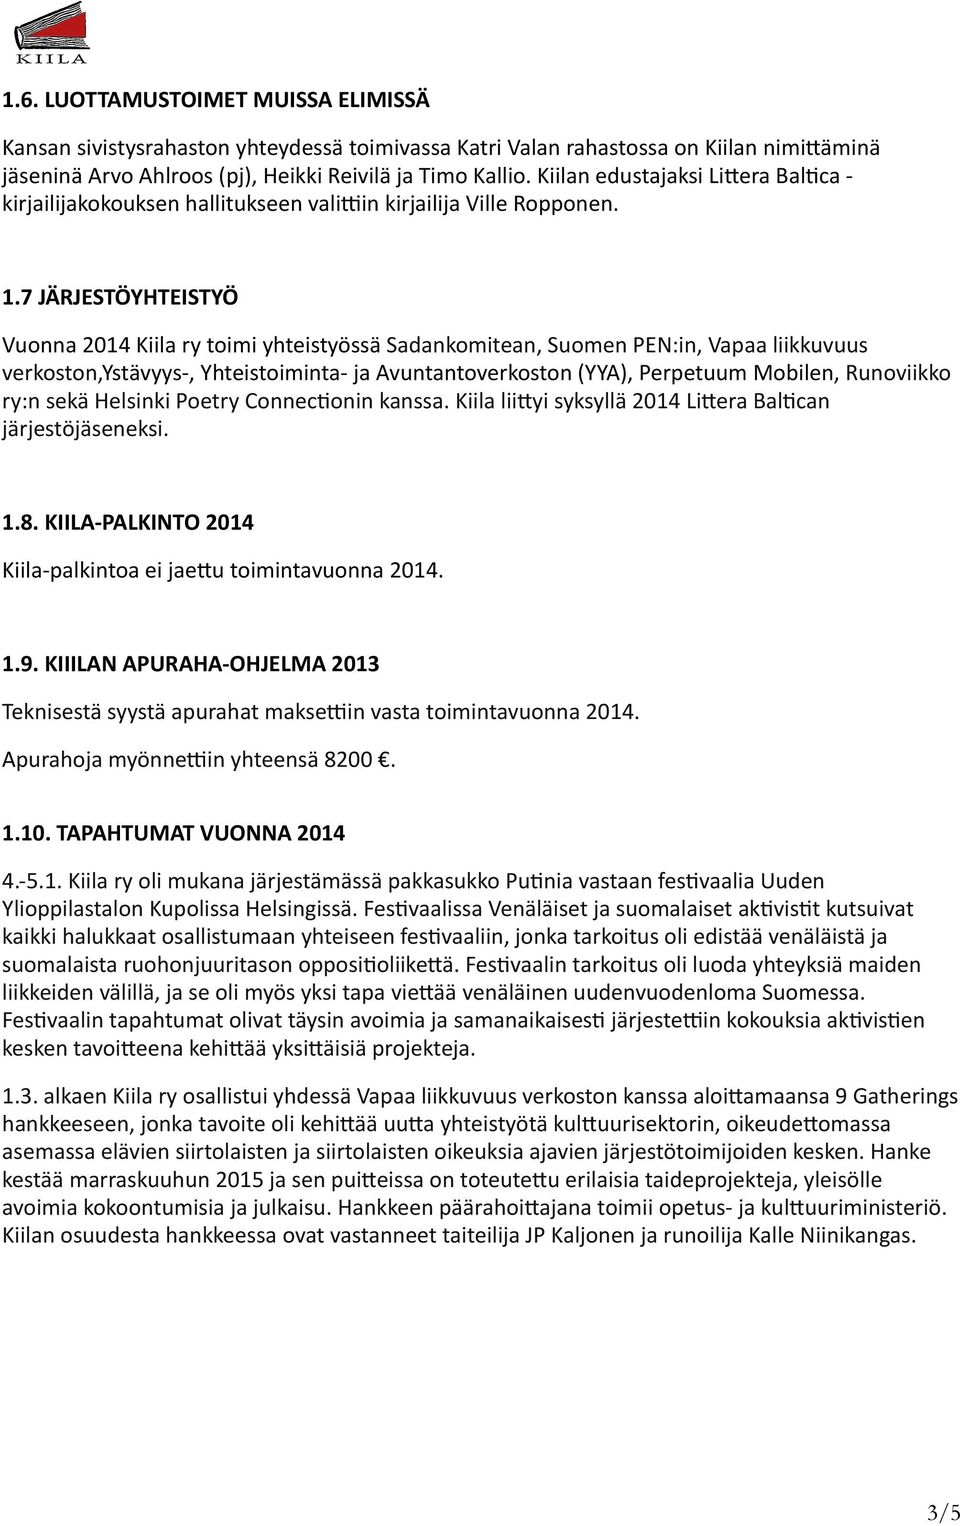 7 JÄRJESTÖYHTEISTYÖ Vuonna 2014 Kiila ry toimi yhteistyössä Sadankomitean, Suomen PEN:in, Vapaa liikkuvuus verkoston,ystävyys-, Yhteistoiminta- ja Avuntantoverkoston (YYA), Perpetuum Mobilen,